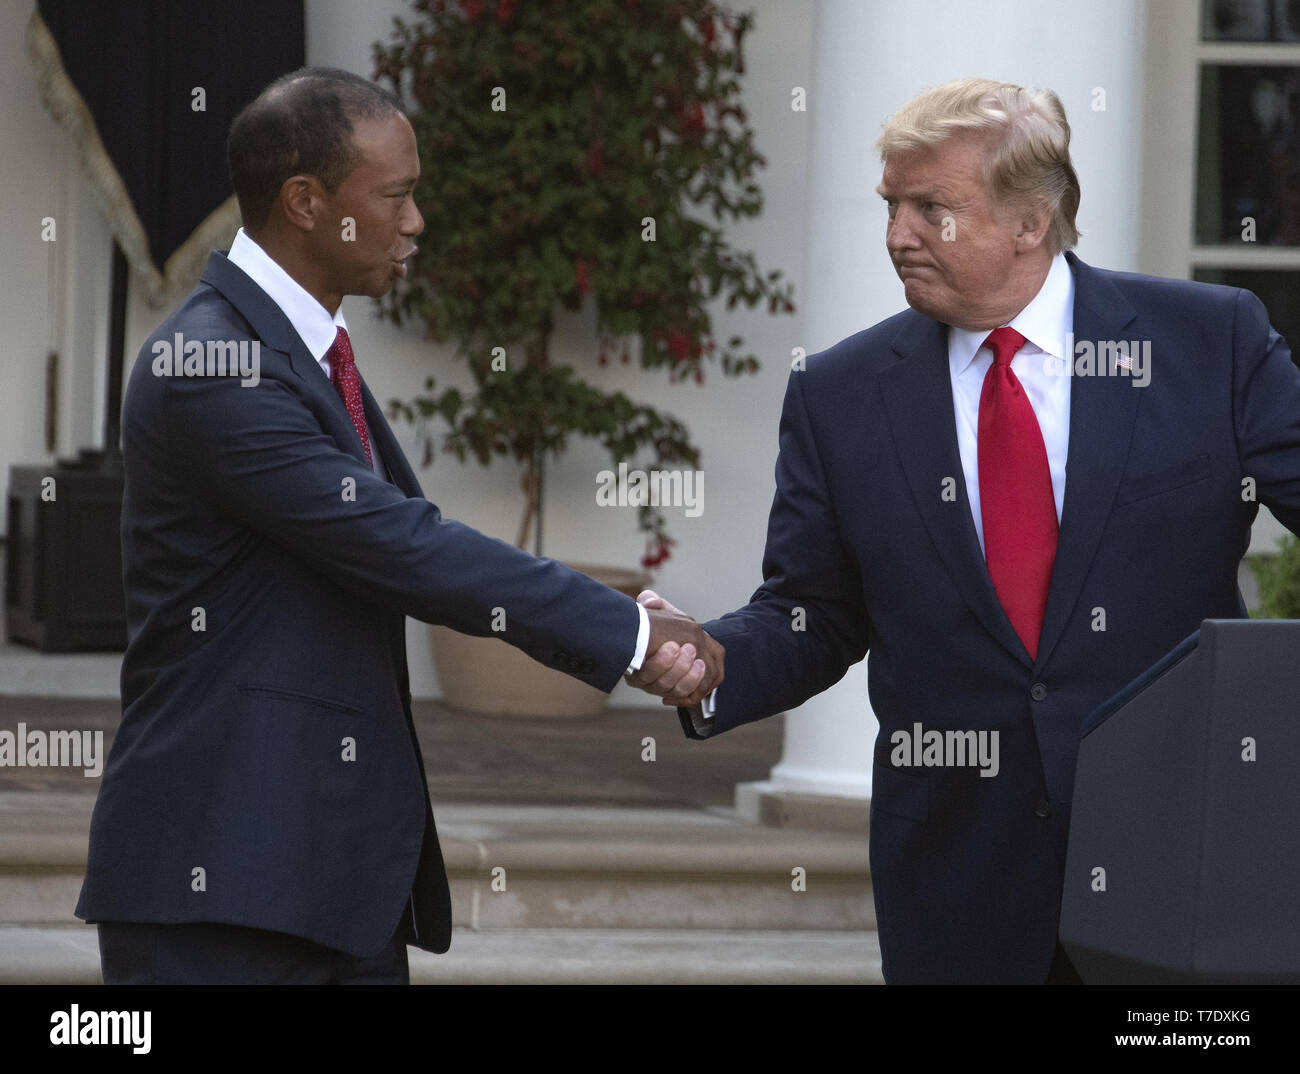 6 mai 2019 - Washington, District of Columbia, États-Unis - Le Président des Etats-Unis, Donald J. Trump, droite, serre la main avec Tiger Woods, golfeur professionnel gauche, alors qu'il présente la Médaille présidentielle de la liberté pour lui dans la roseraie de la Maison Blanche à Washington, DC, le 6 mai 2019. La Médaille présidentielle de la liberté est une récompense décernée par le président des États-Unis à reconnaître les gens qui ont fait de ''une contribution méritoire à la sécurité ou aux intérêts nationaux des États-Unis, la paix mondiale, culturelle ou autre entreprise publique ou privée.''.Cred Banque D'Images